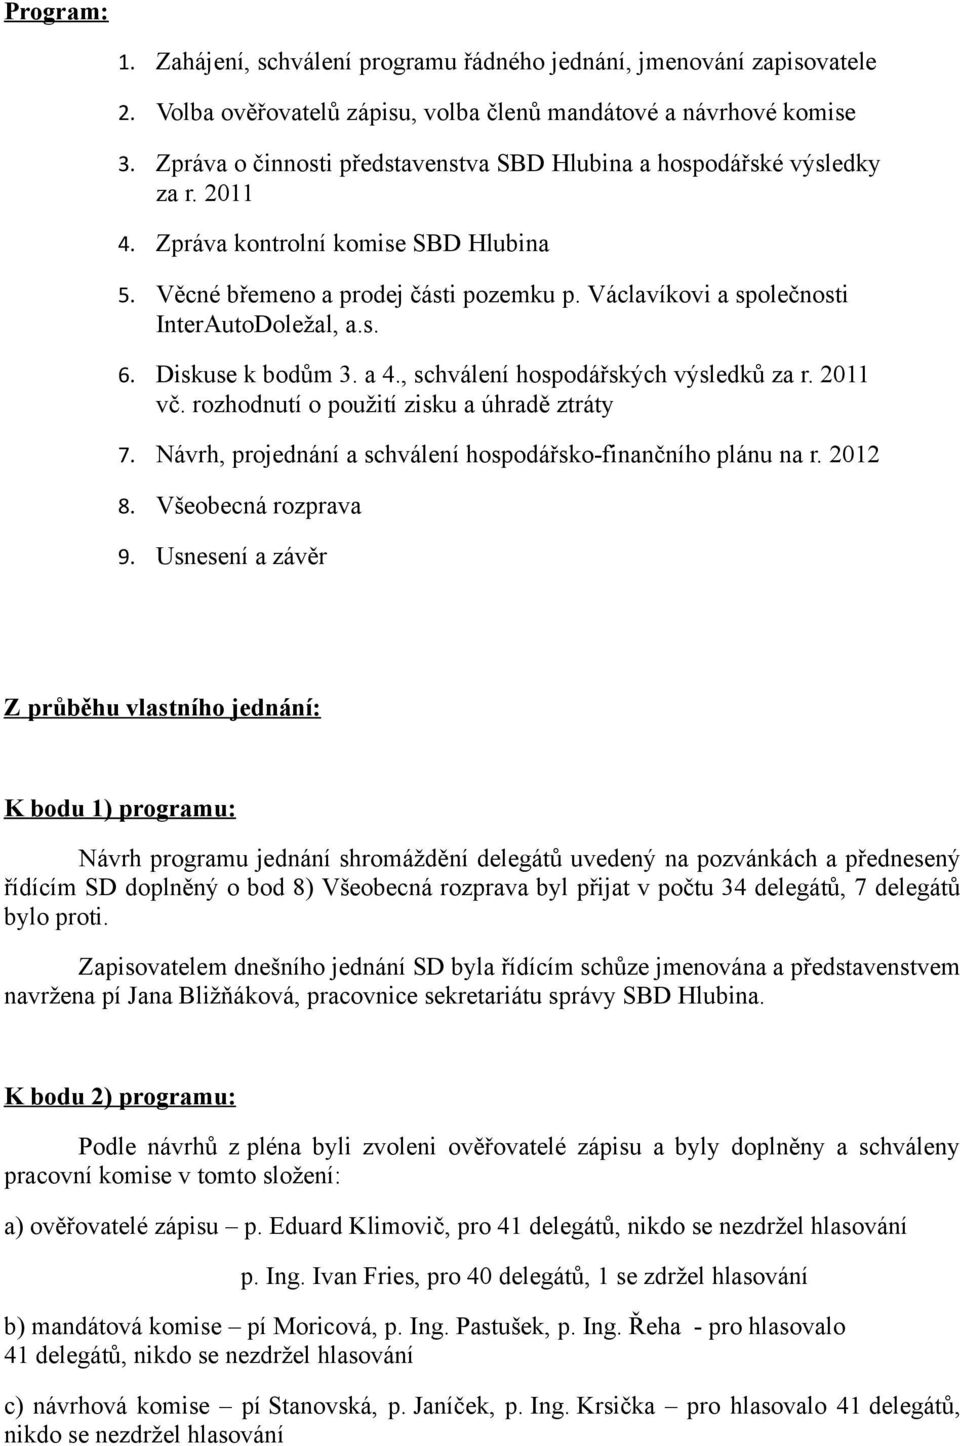 Václavíkovi a společnosti InterAutoDoležal, a.s. 6. Diskuse k bodům 3. a 4., schválení hospodářských výsledků za r. 2011 vč. rozhodnutí o použití zisku a úhradě ztráty 7.